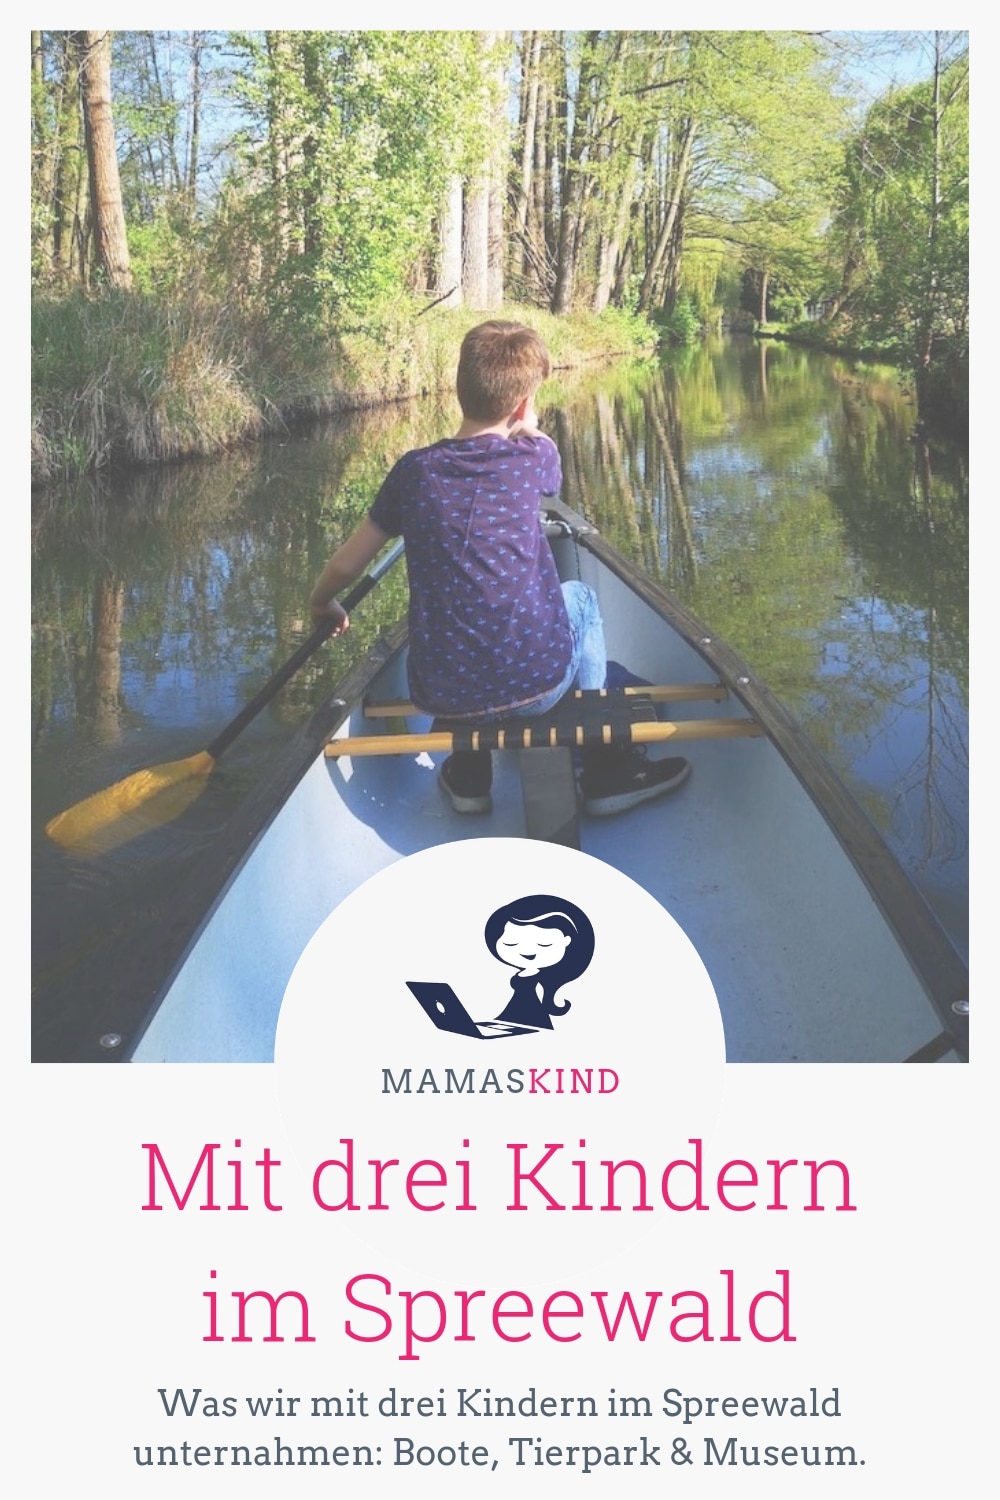 Mit drei Kindern im Spreewald: Urlaub! | Was wir mit drei Kindern im Spreewald unternahmen: Tipps für Boote, Tierpark und Museum. | Mehr Infos auf mamaskind.de